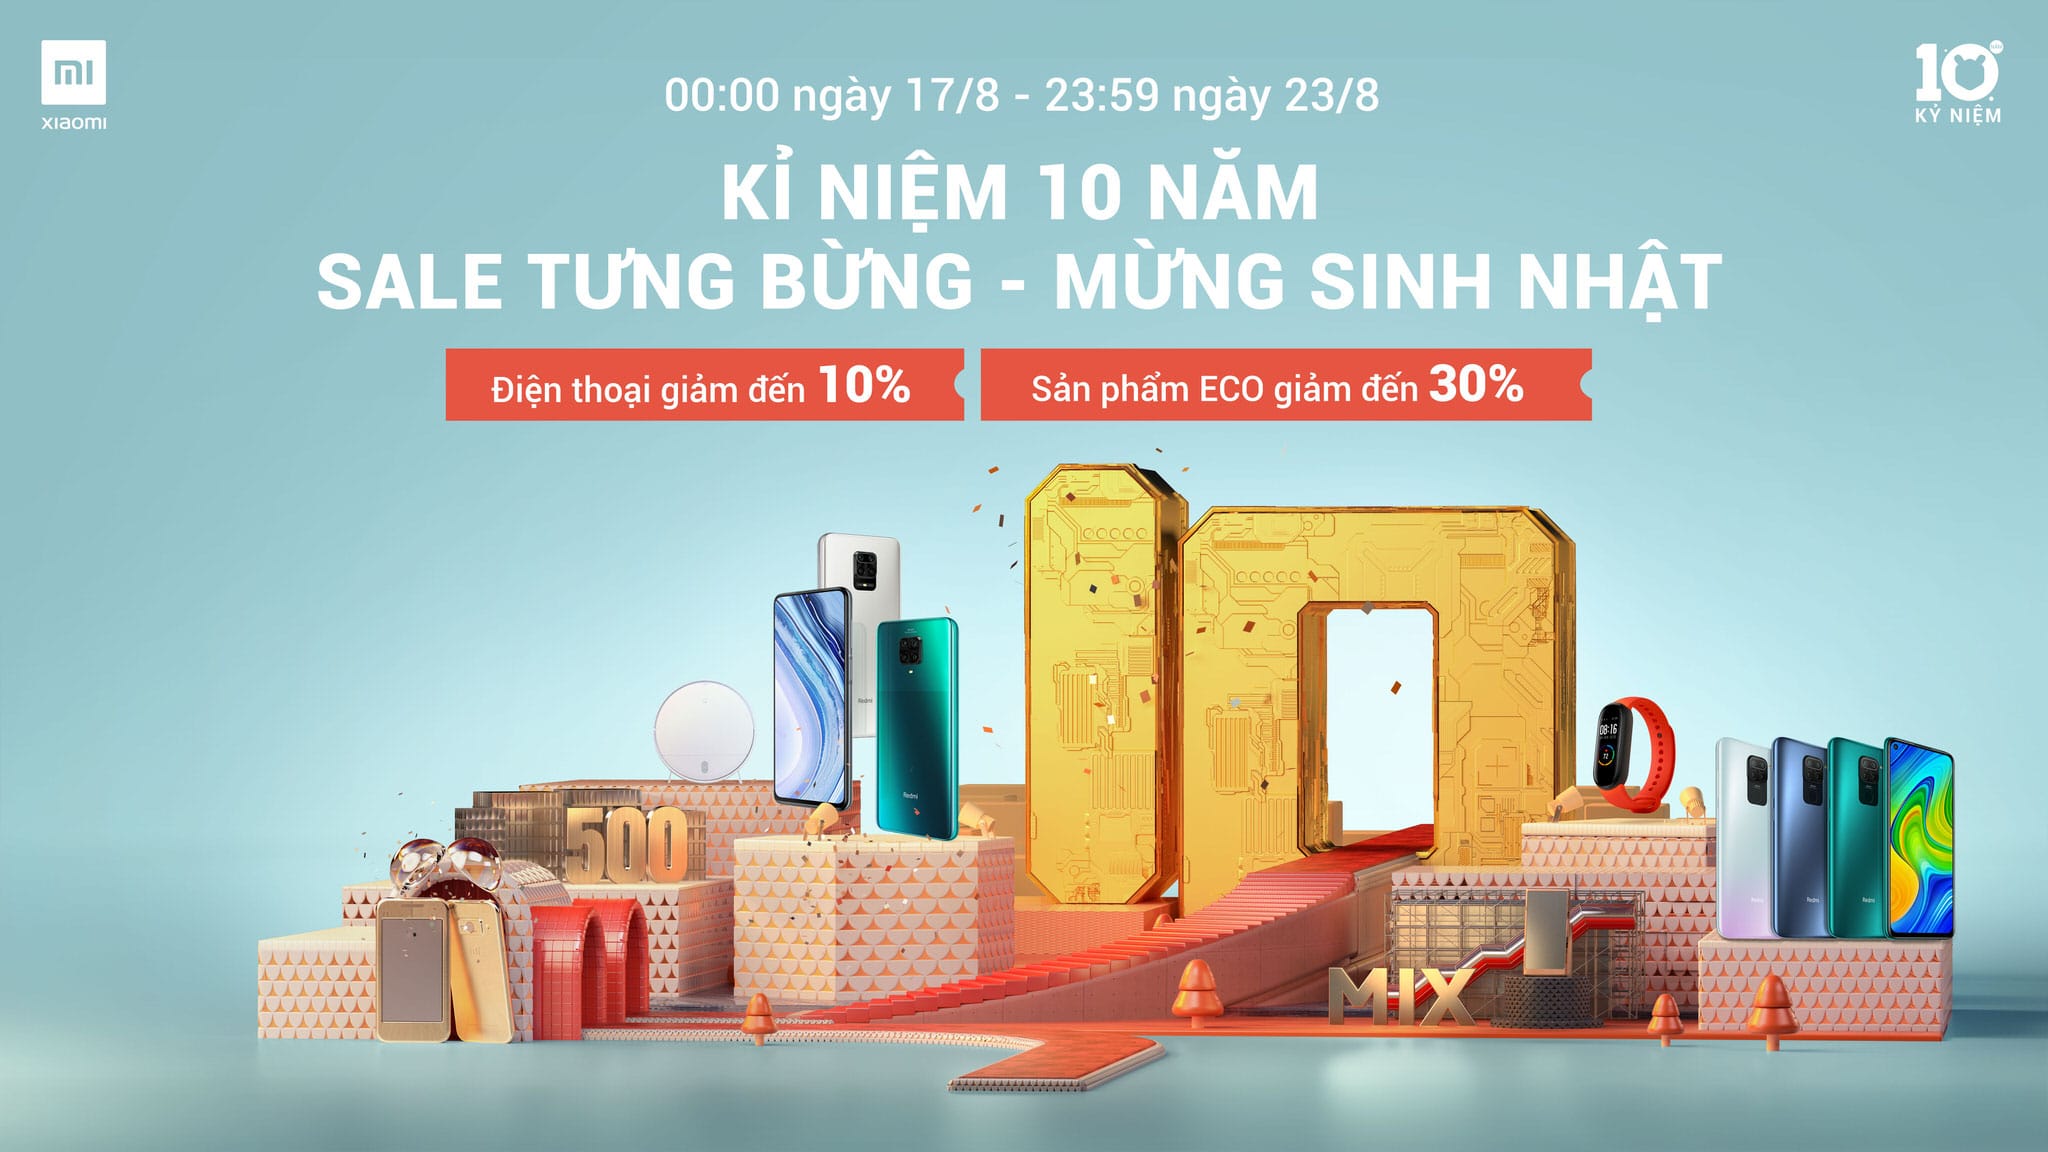 Xiaomi kỉ niệm chặng đường 10 năm thành lập với chiến dịch “Sales tưng bừng, mừng sinh nhật”